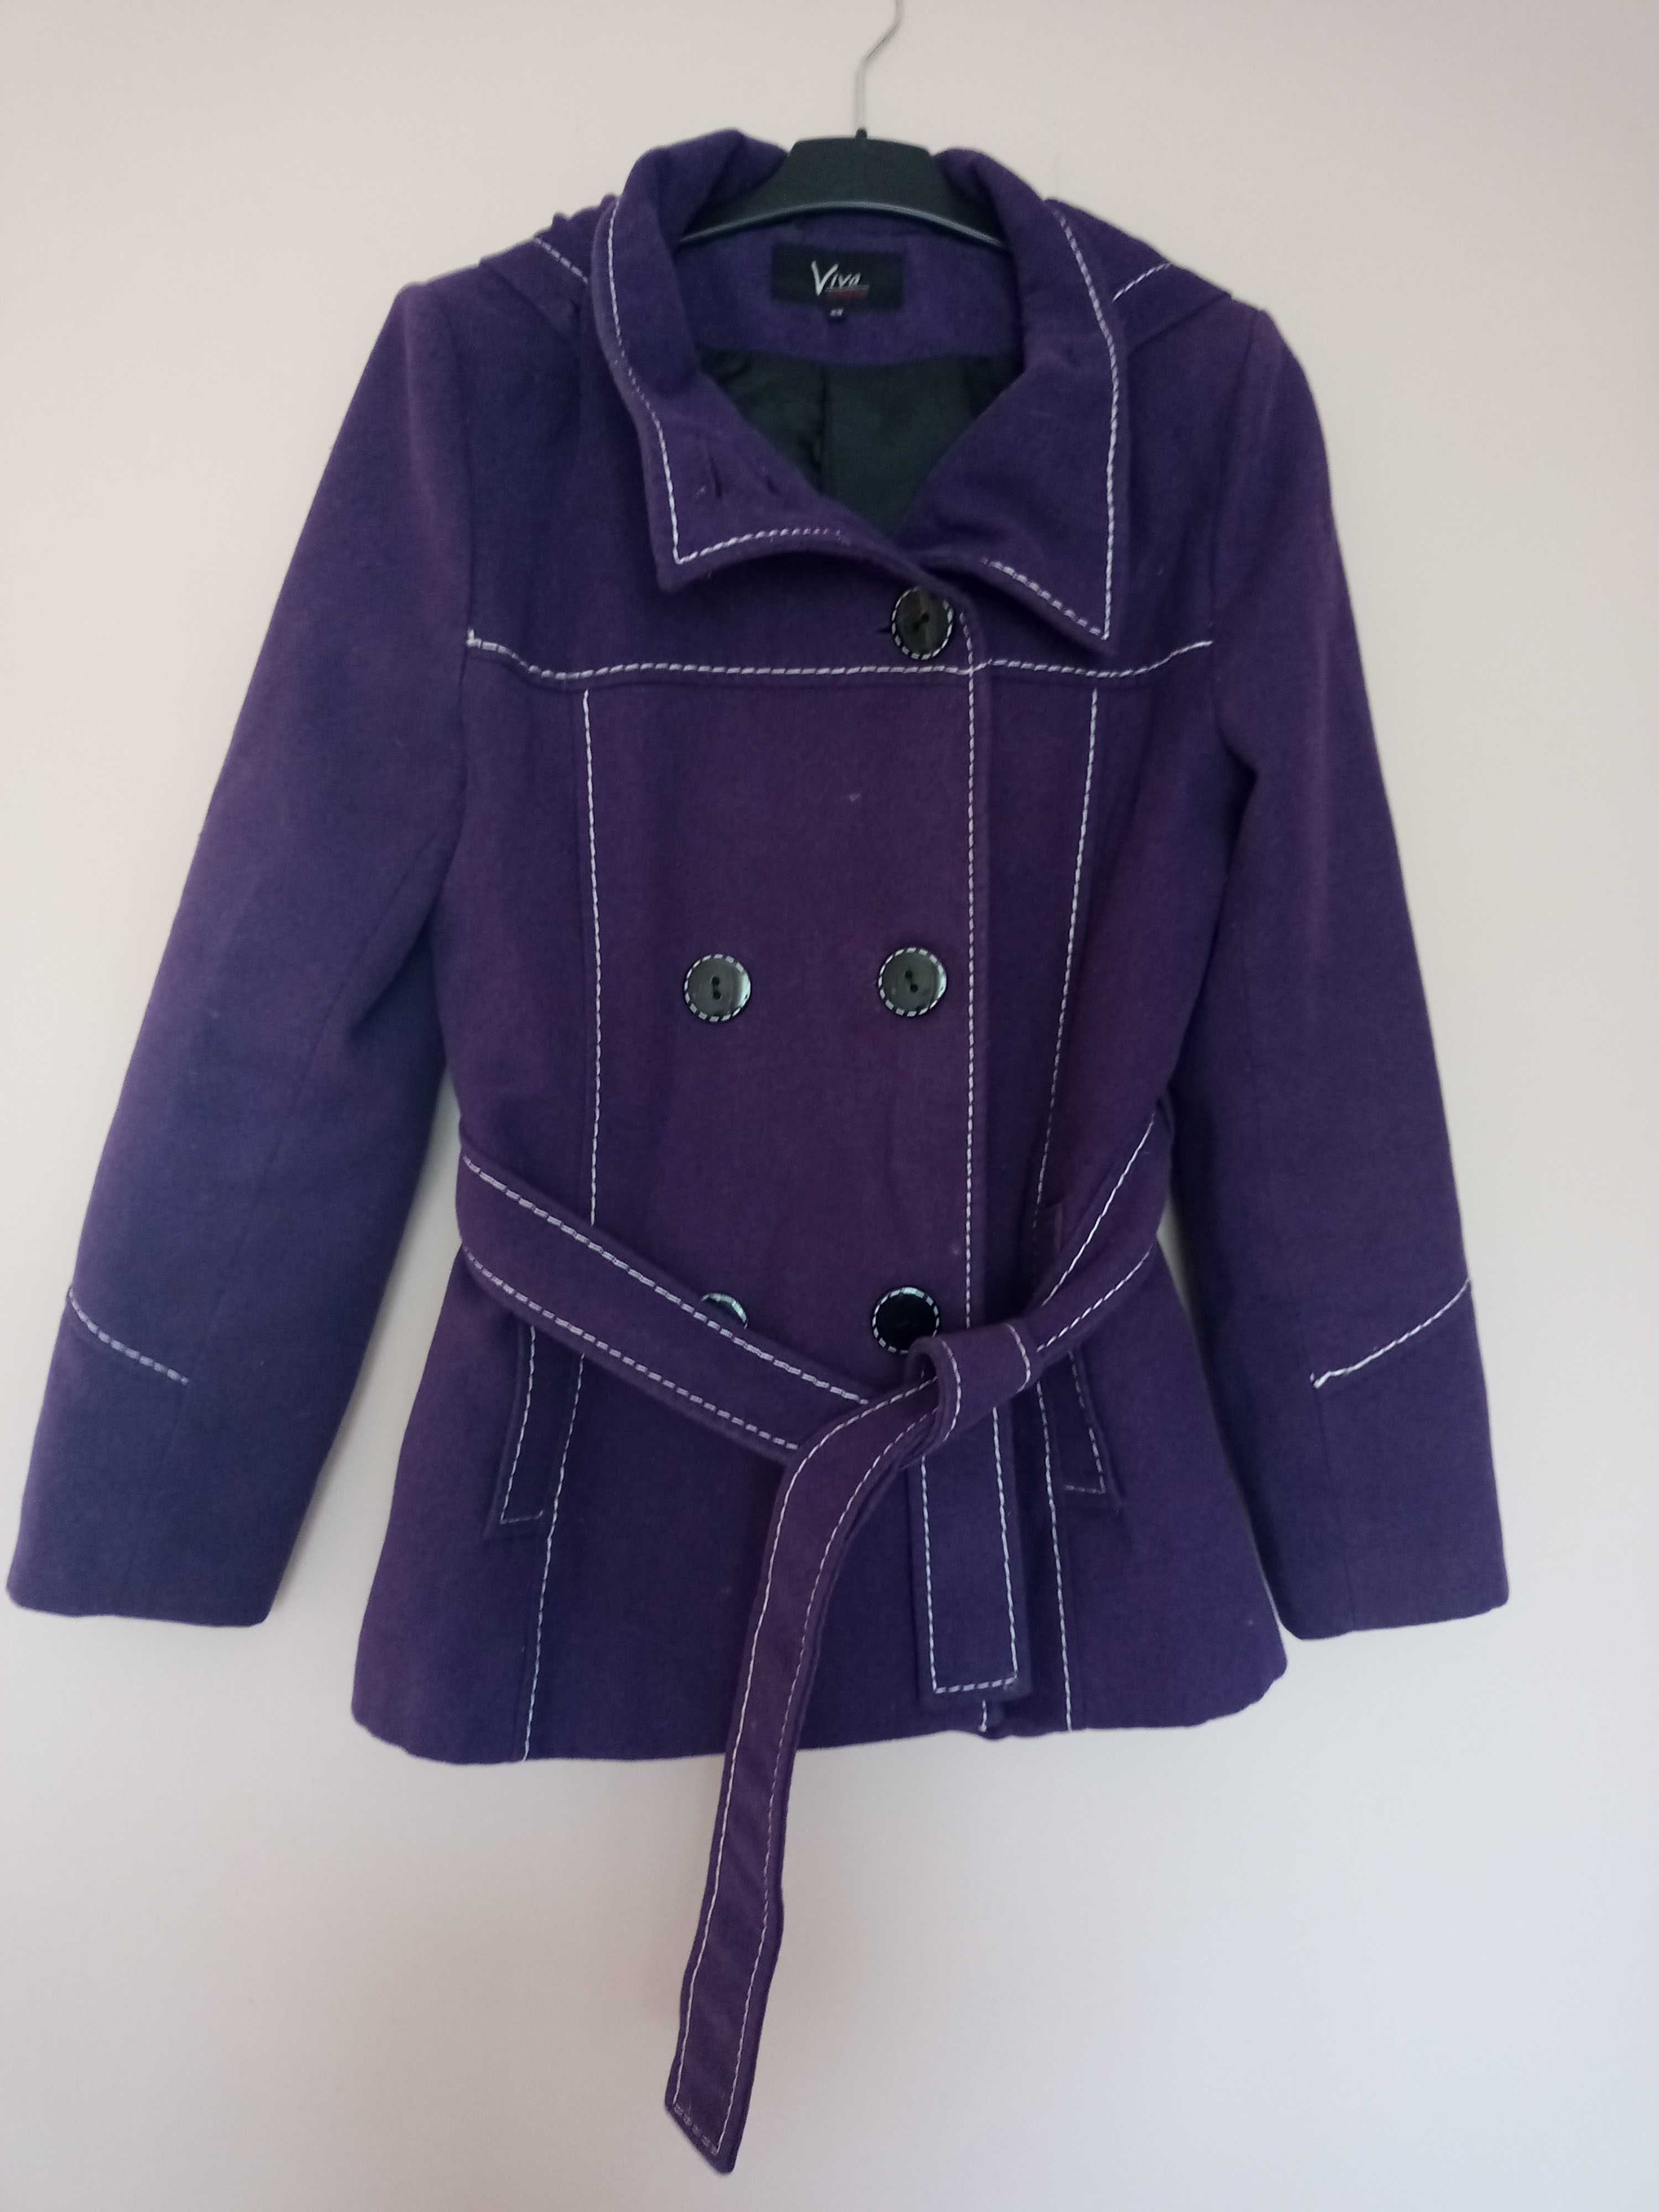 fioletowy płaszcz z kapturem fiolet płaszcyzk zimowy S M